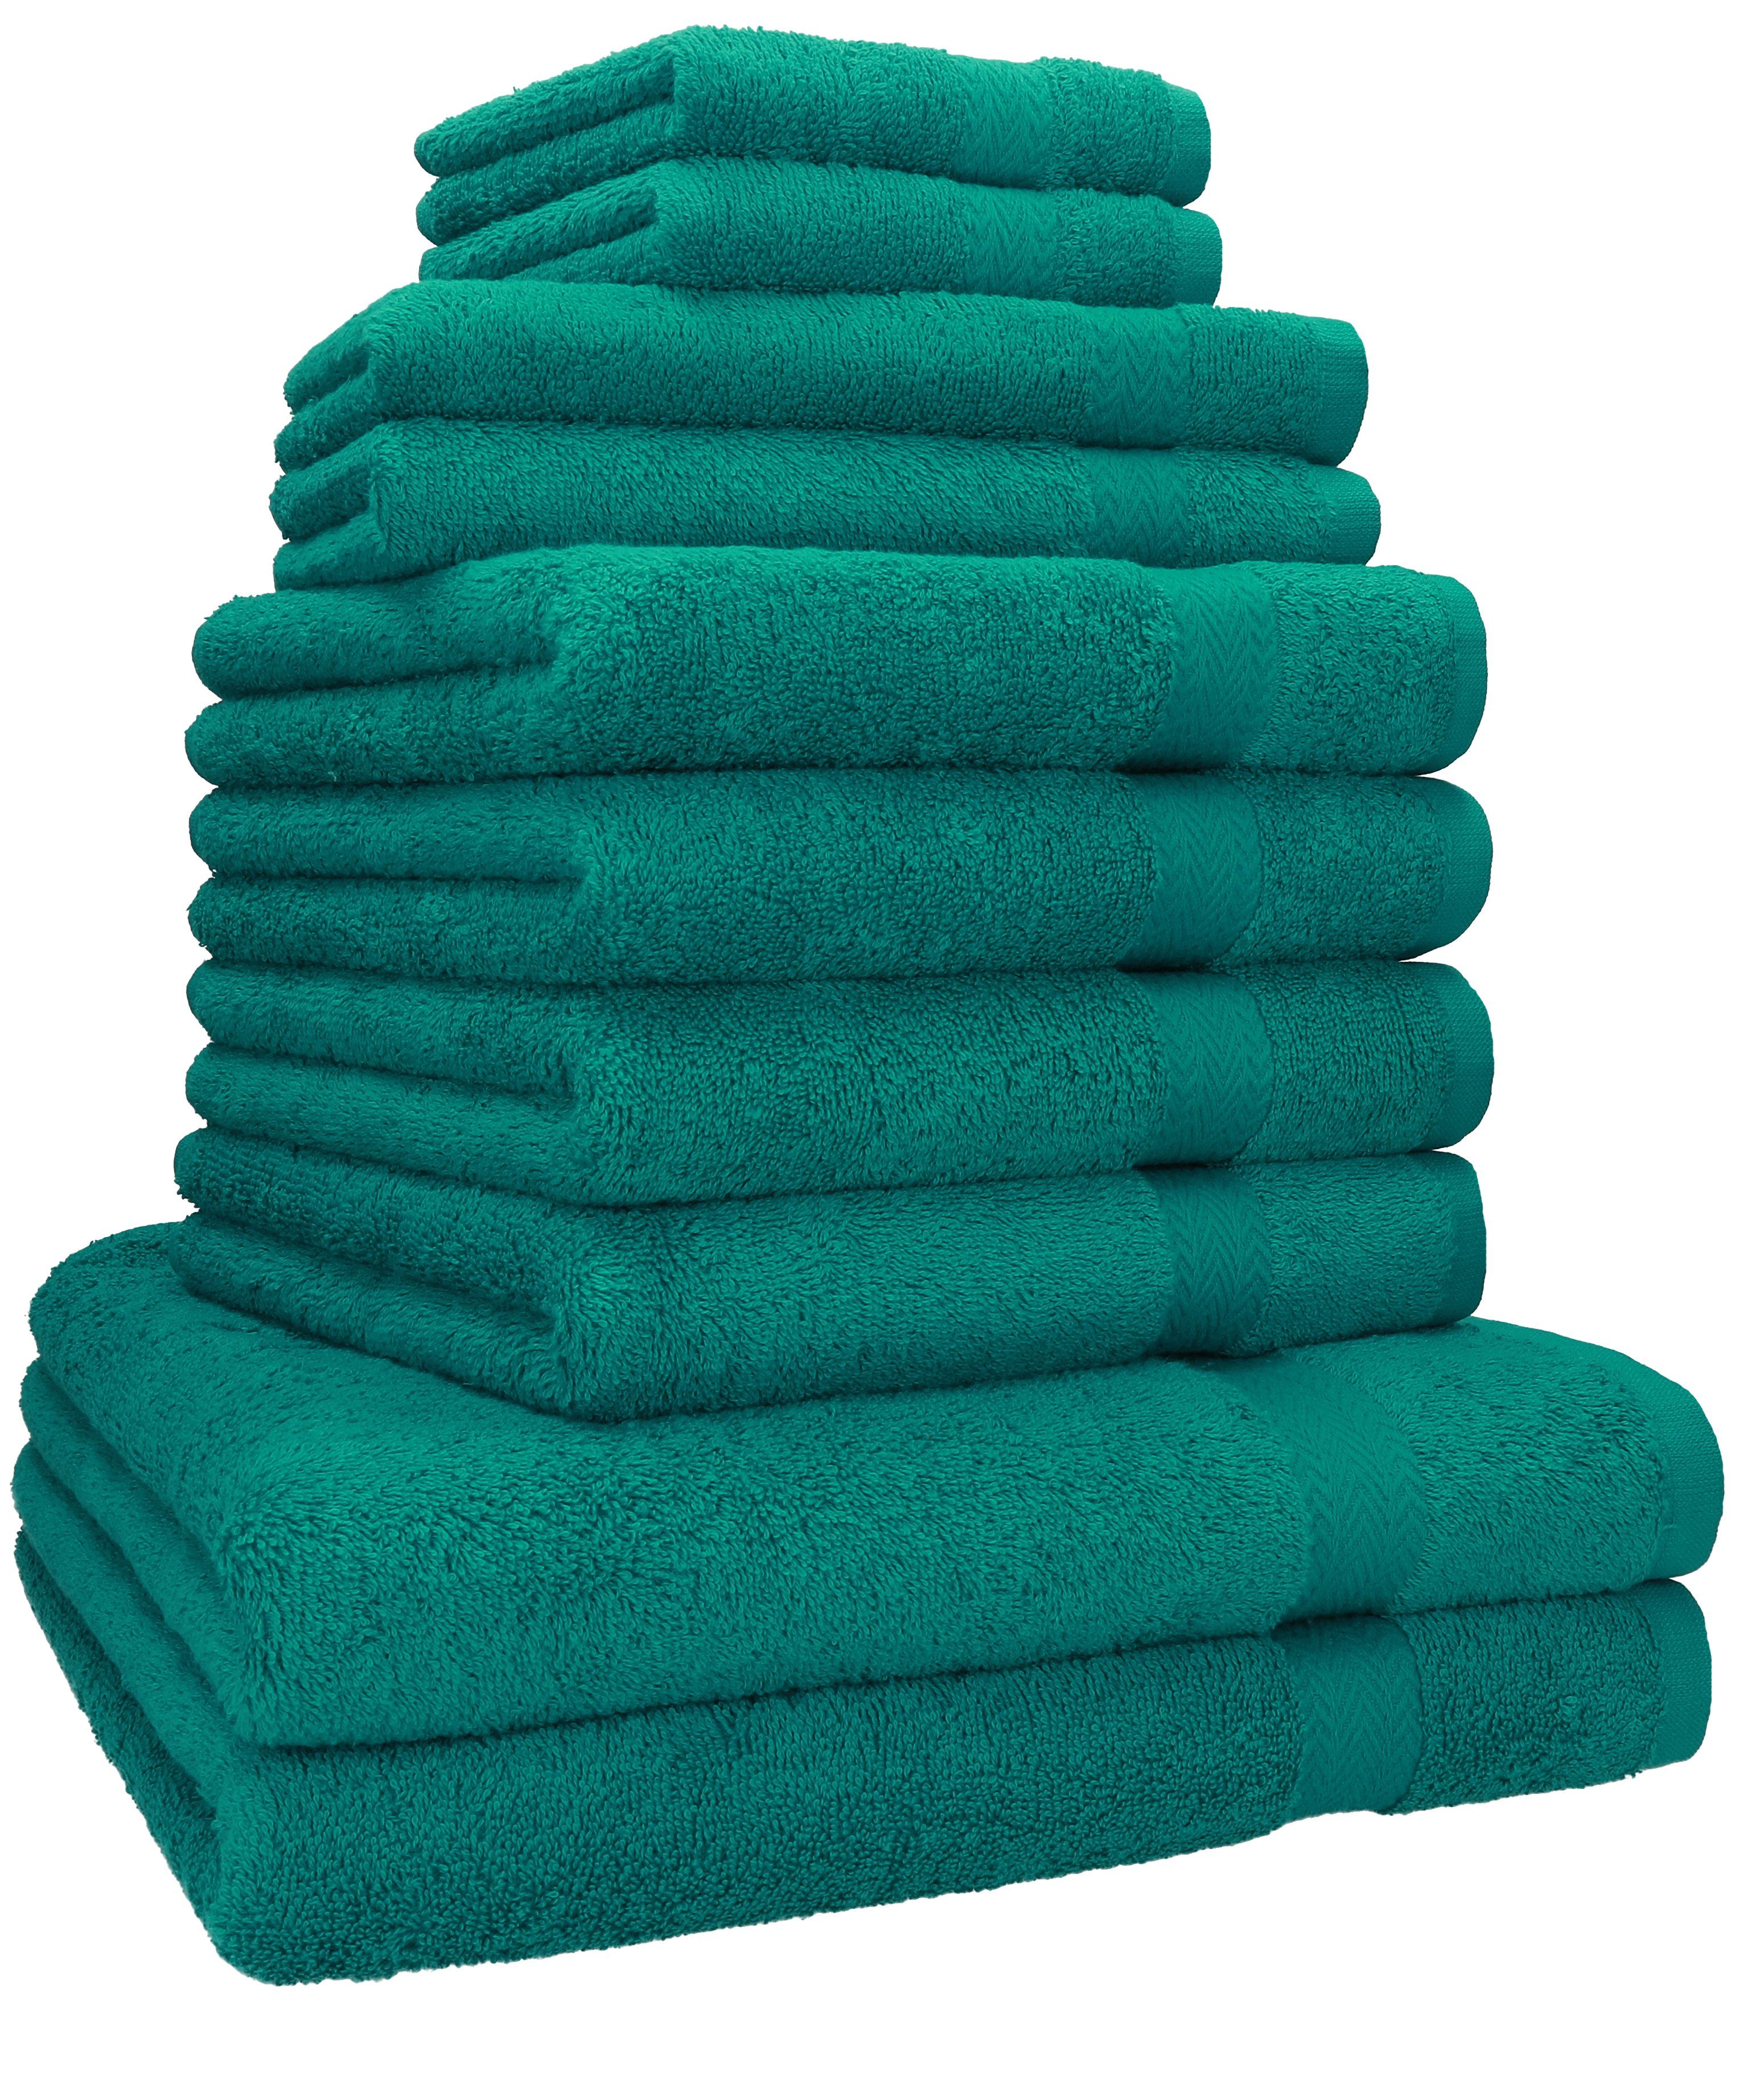 Betz Handtuch Set 10-TLG. Handtuch-Set Classic 100% Baumwolle 2 Duschtücher 4 Handtücher 2 Gästetücher 2 Seiftücher, 100% Baumwolle, (10-tlg) smaragdgrün